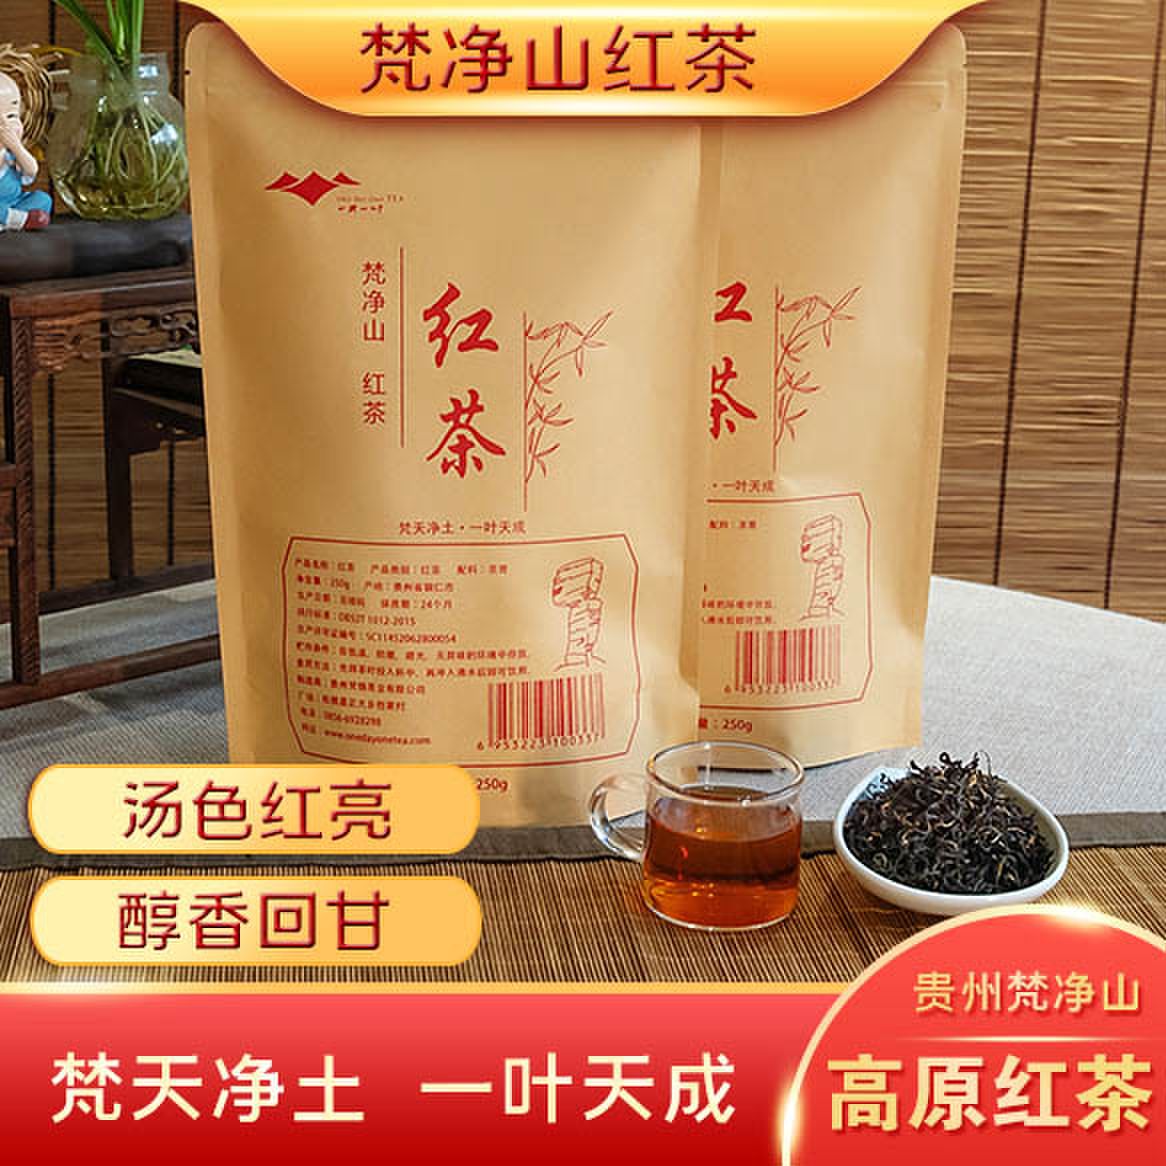 贵州梵青红茶 传统手工制作 大师级工艺 净含量250g